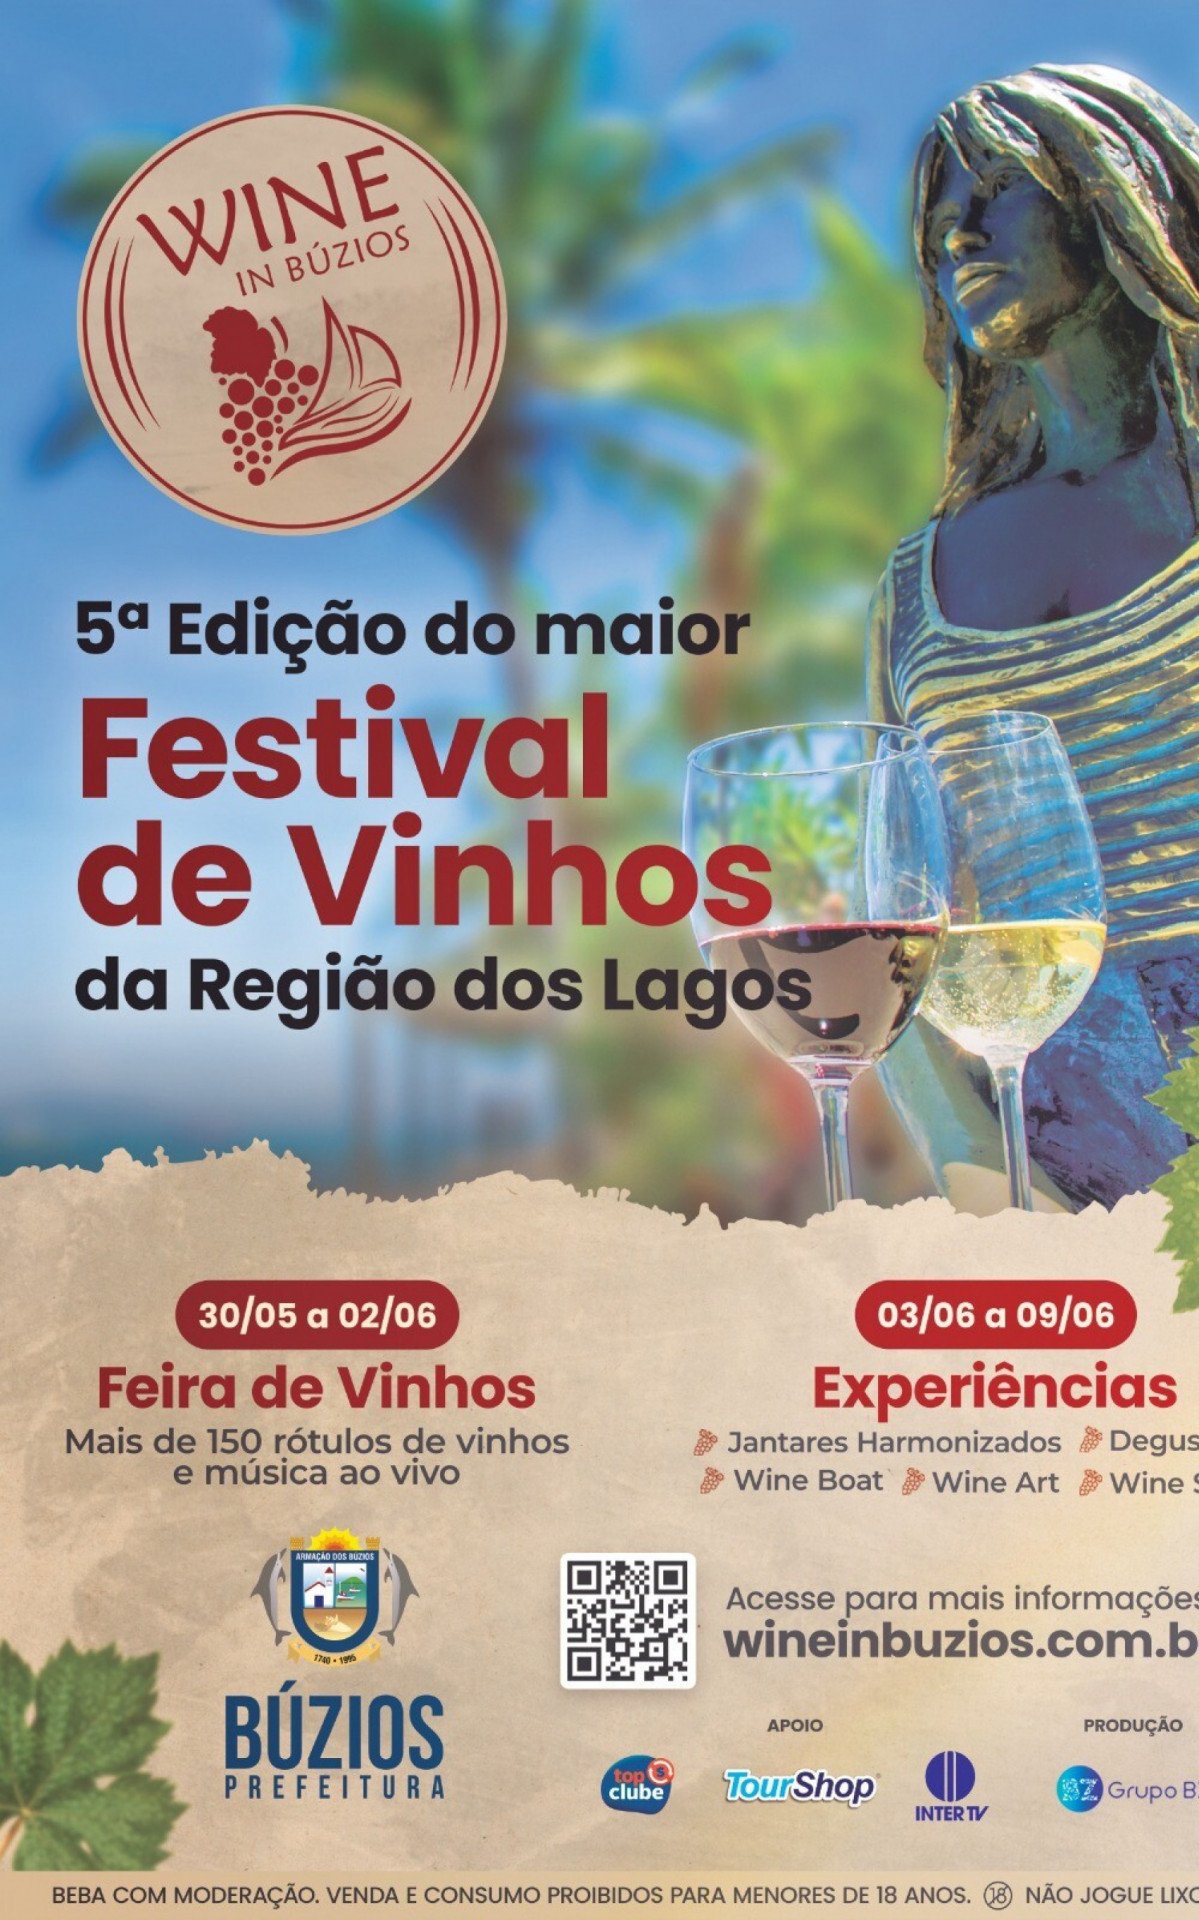 Festival de Vinhos, "Wine in Búzios" começou neste fim de semana na Praça Santos Dumont | Búzios